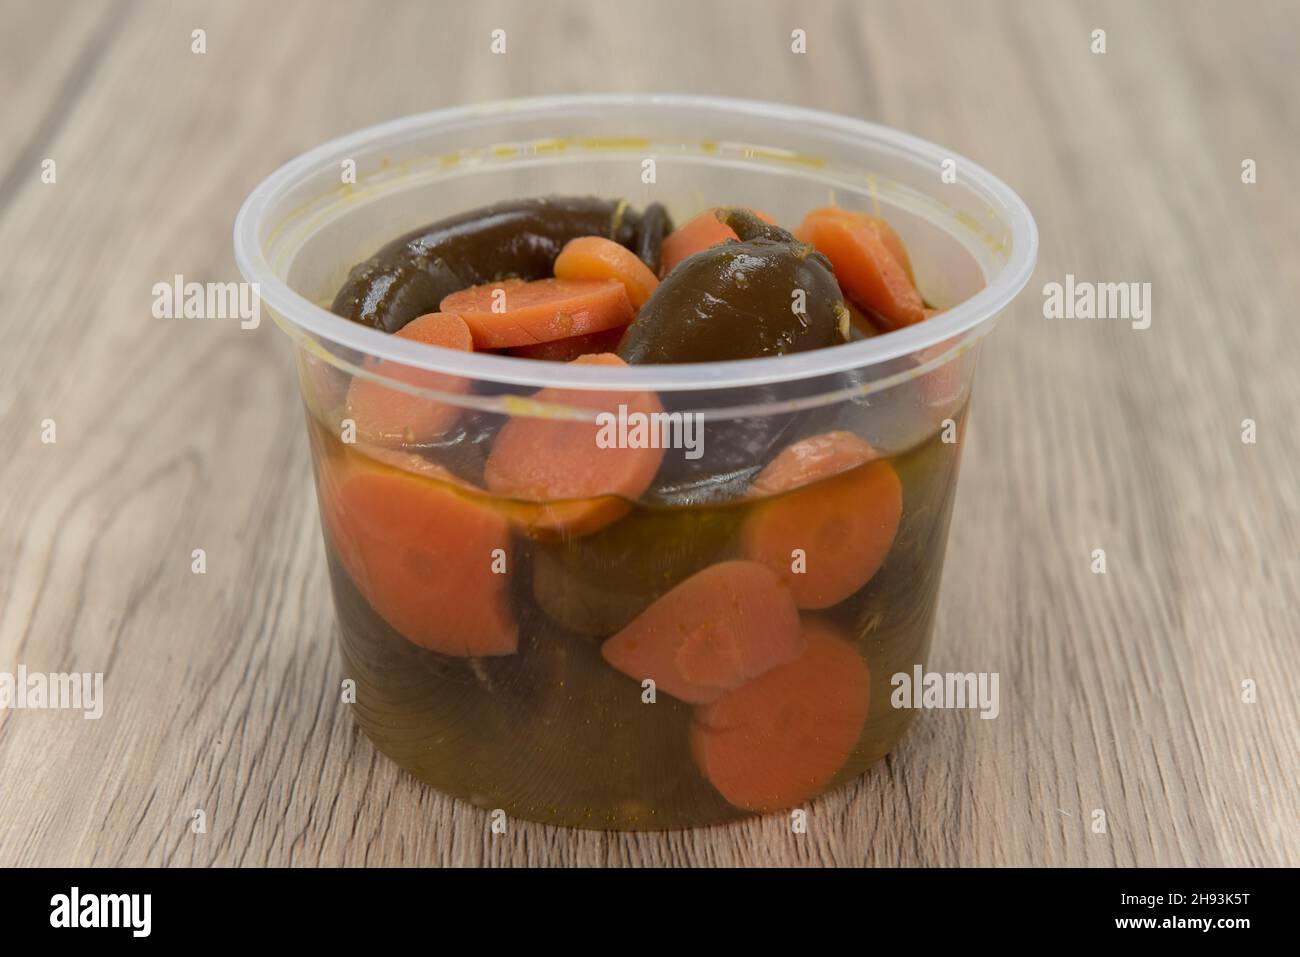 Contenitore per ordine laterale piccante di salsa jalapenos per aggiungere un po' di calore al pasto. Foto Stock